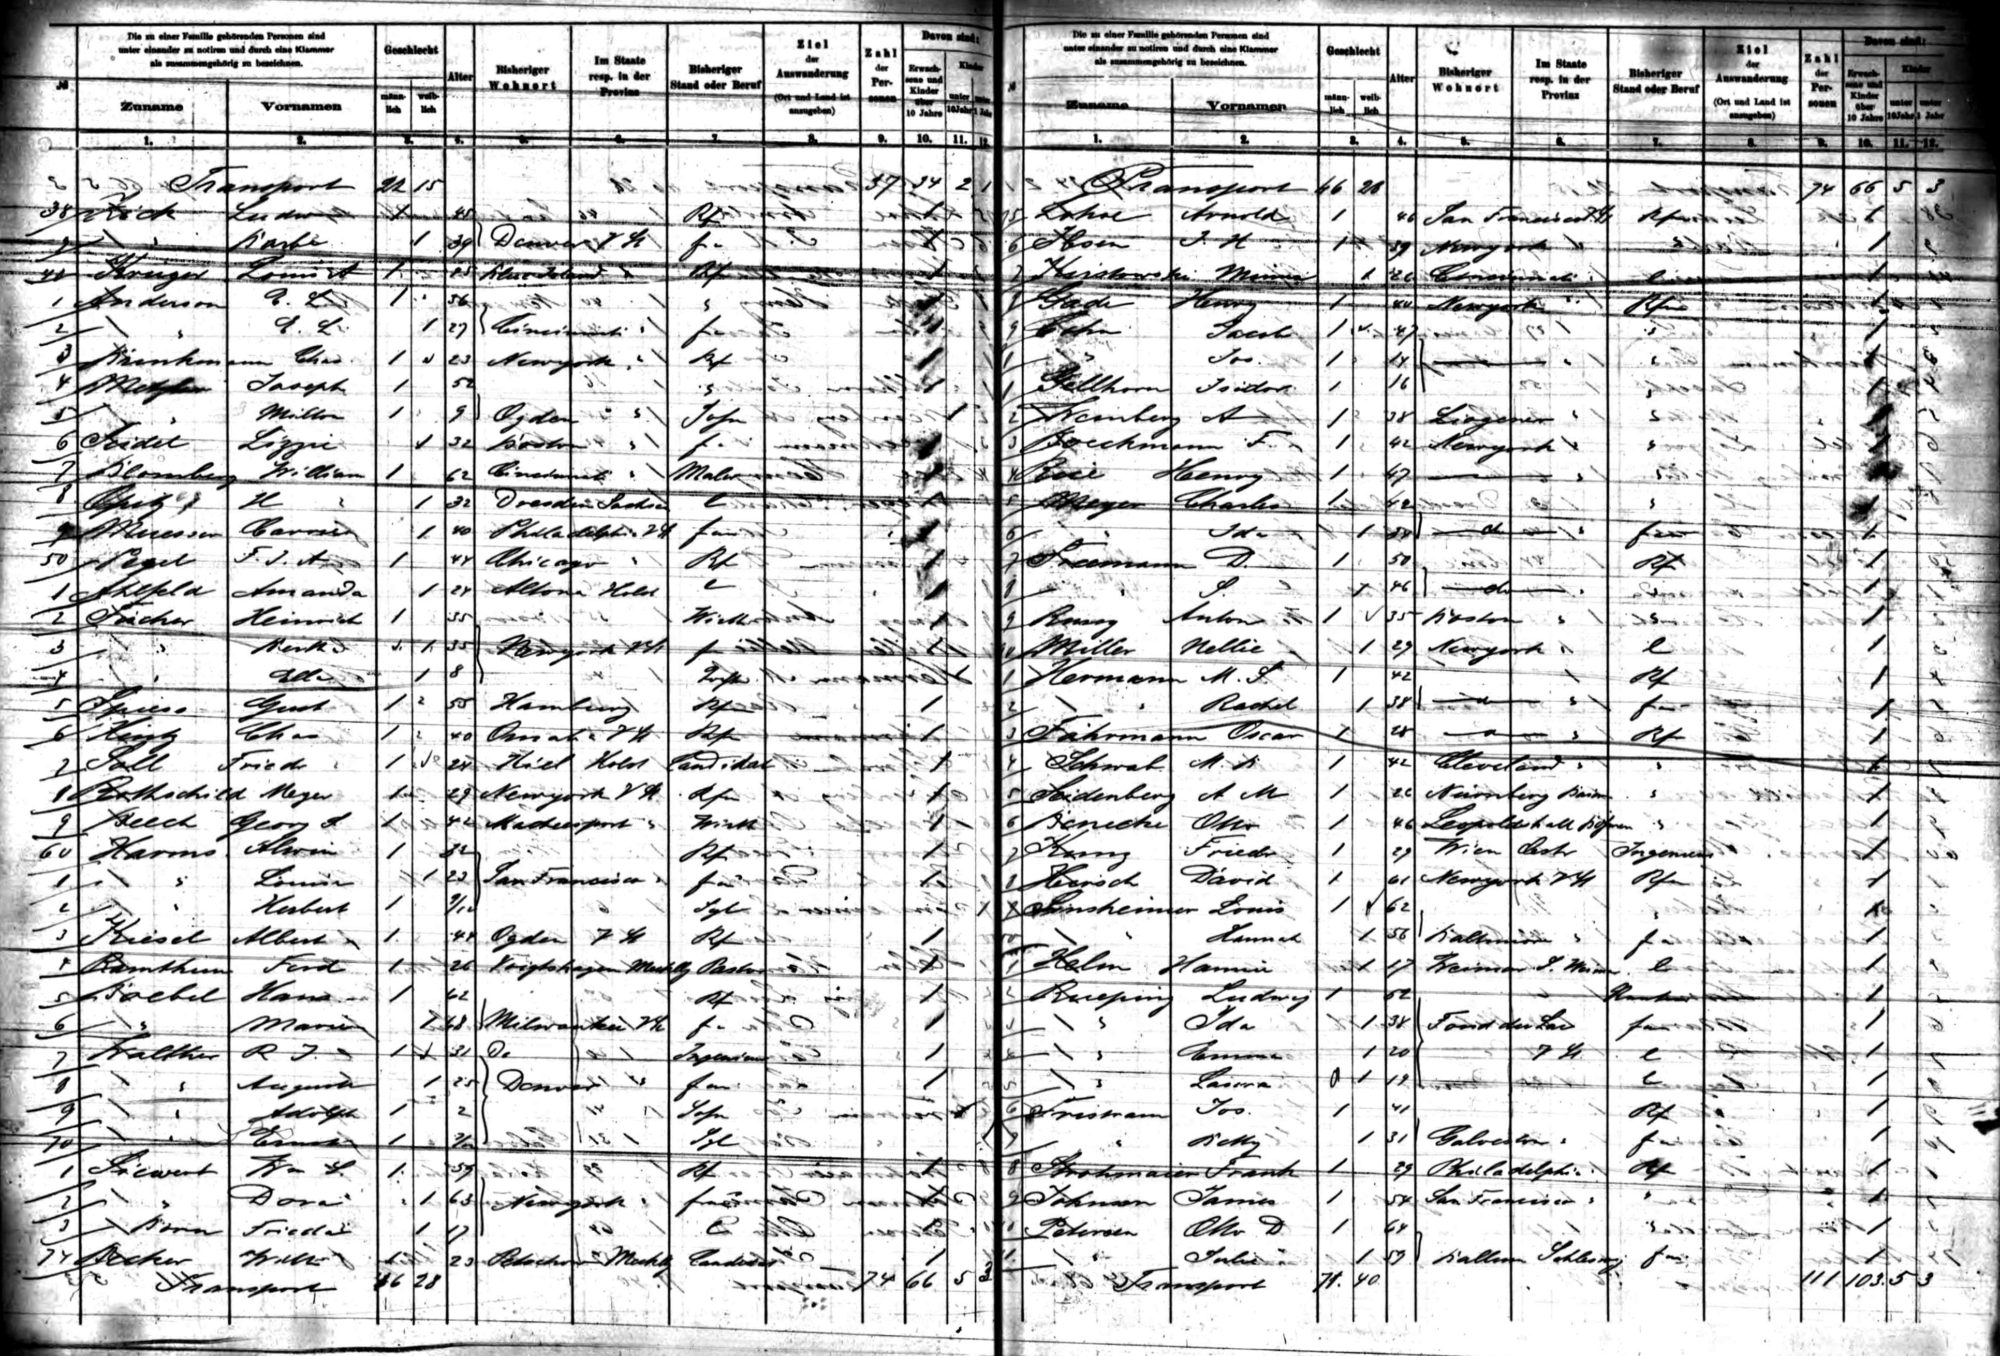 1891 William Blomberg Passenger List